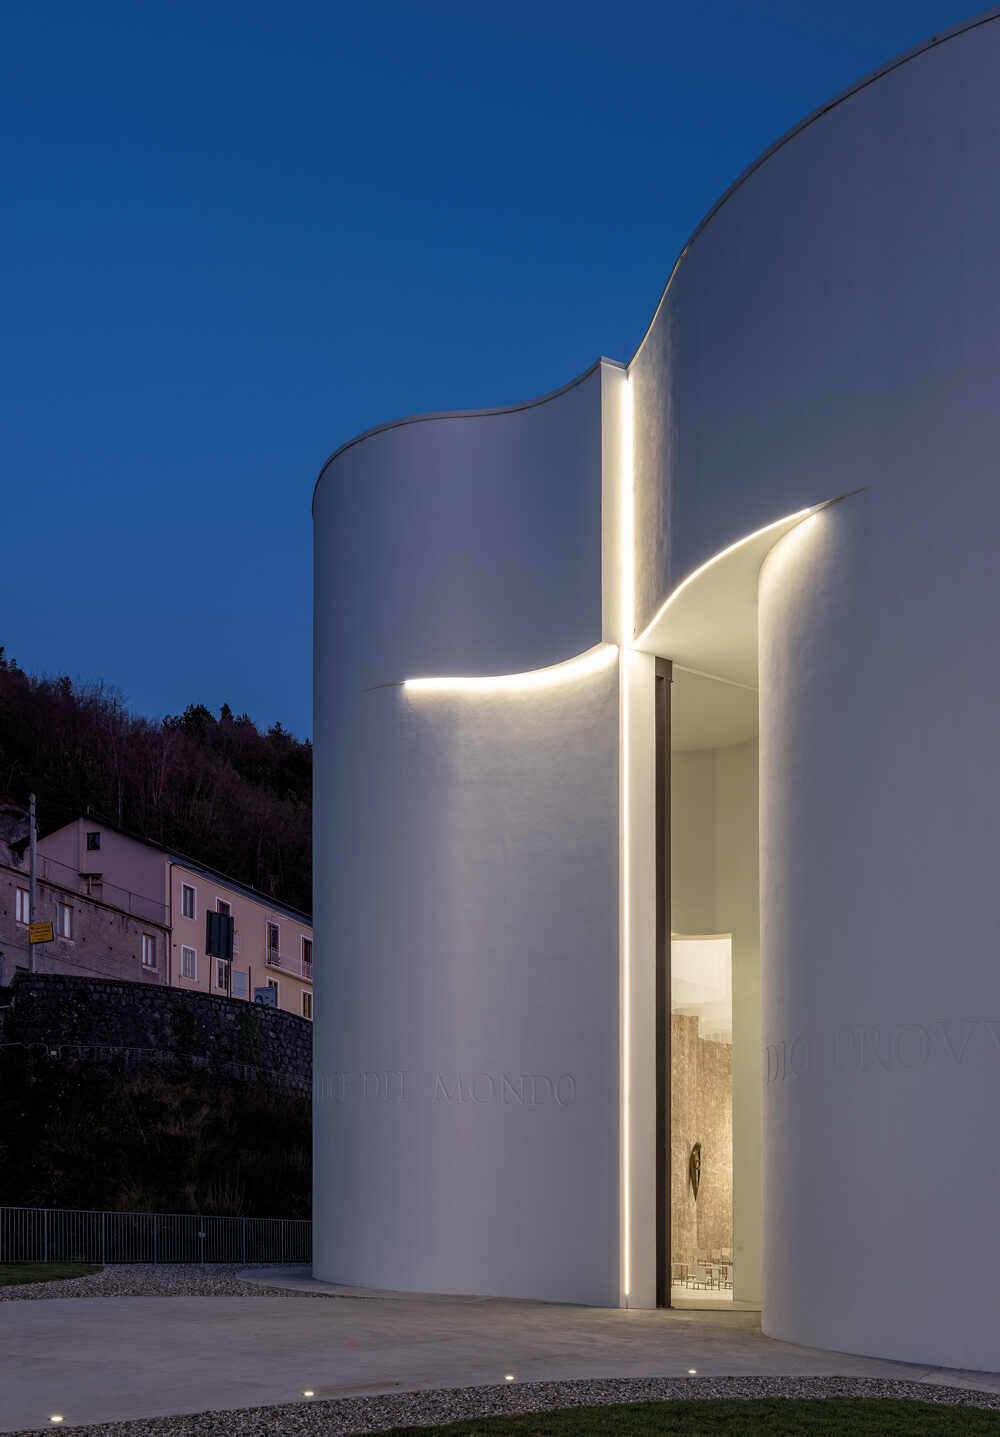 מגזין מקו ועד תרבות / מיזם דיגיטלי ללא צרכי רווח עיצוב מעורר השראה <br><br>מסורת ואדריכלות מודרנית<br><br> כנסייה בפארק הלאומי Pollino ב- Calibria, דרום איטליה 